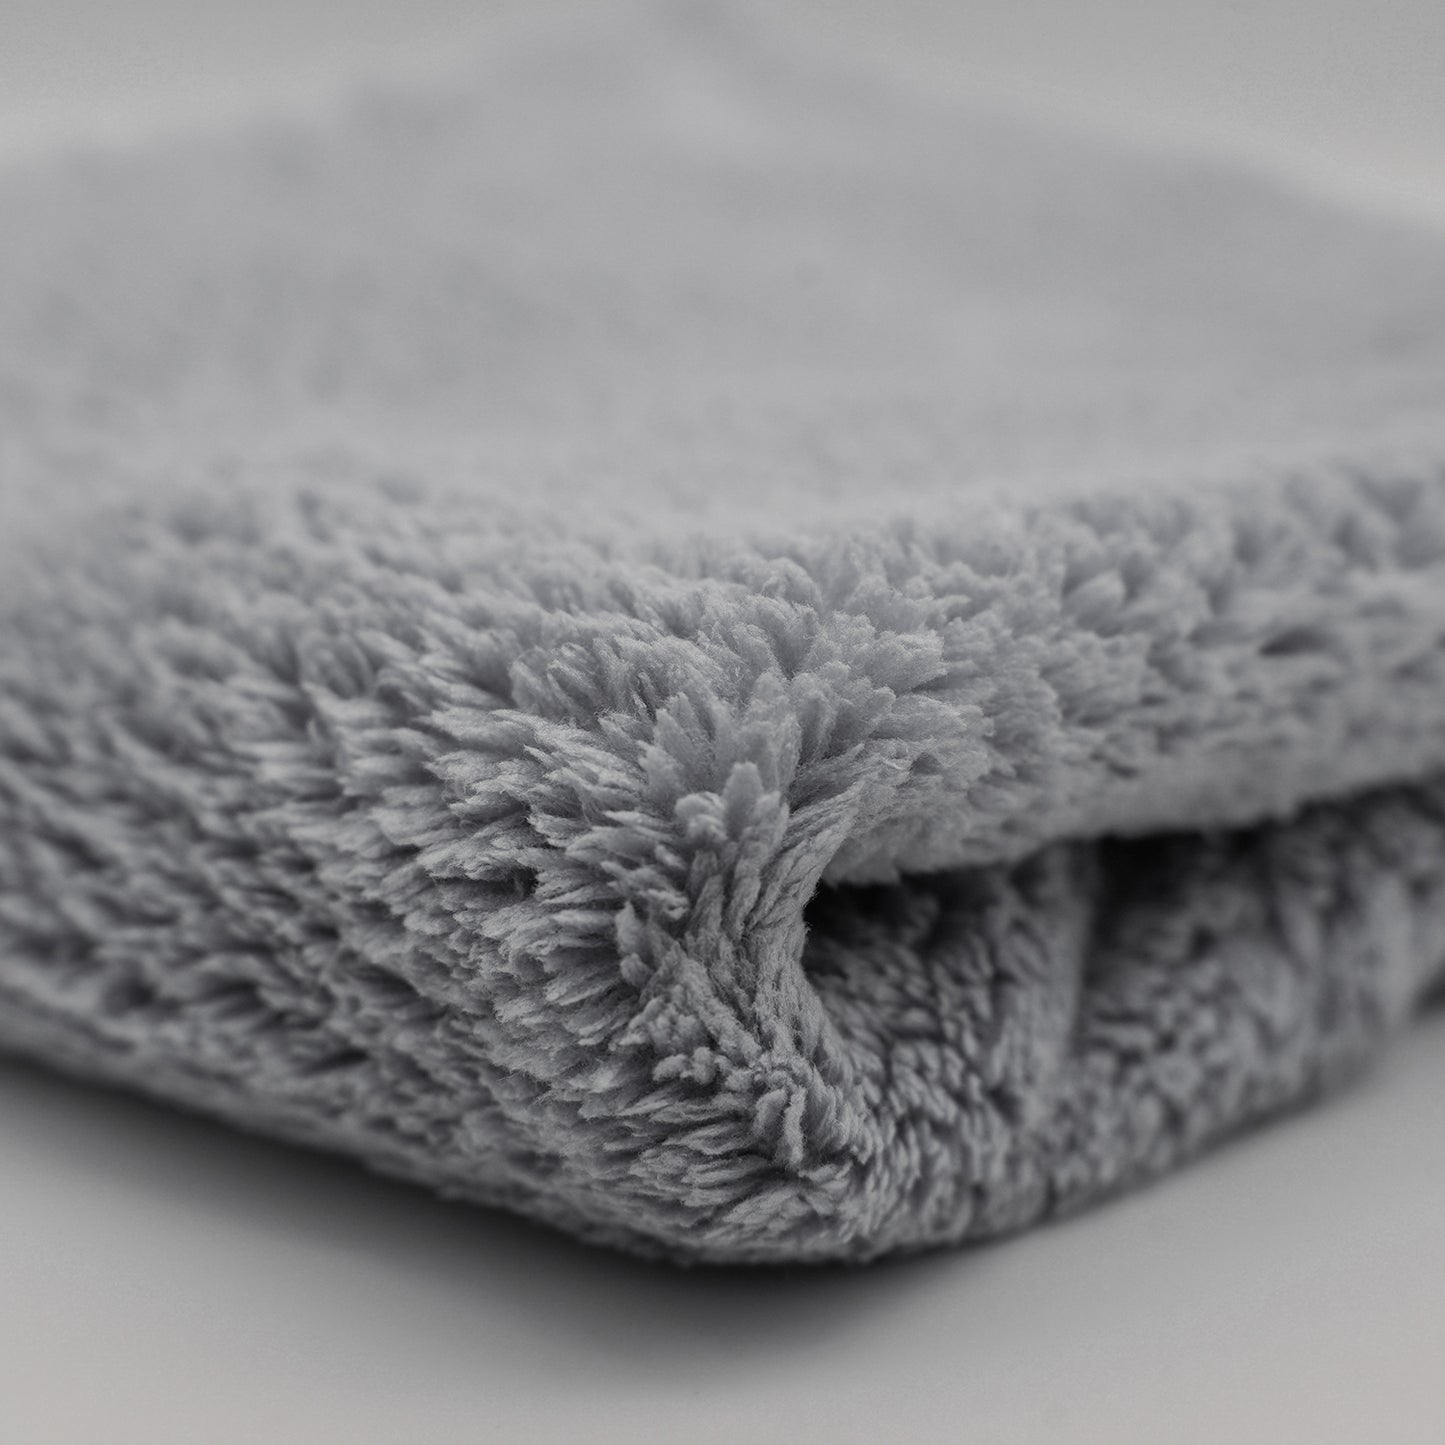 Case of 12 - Premium Microfiber towels